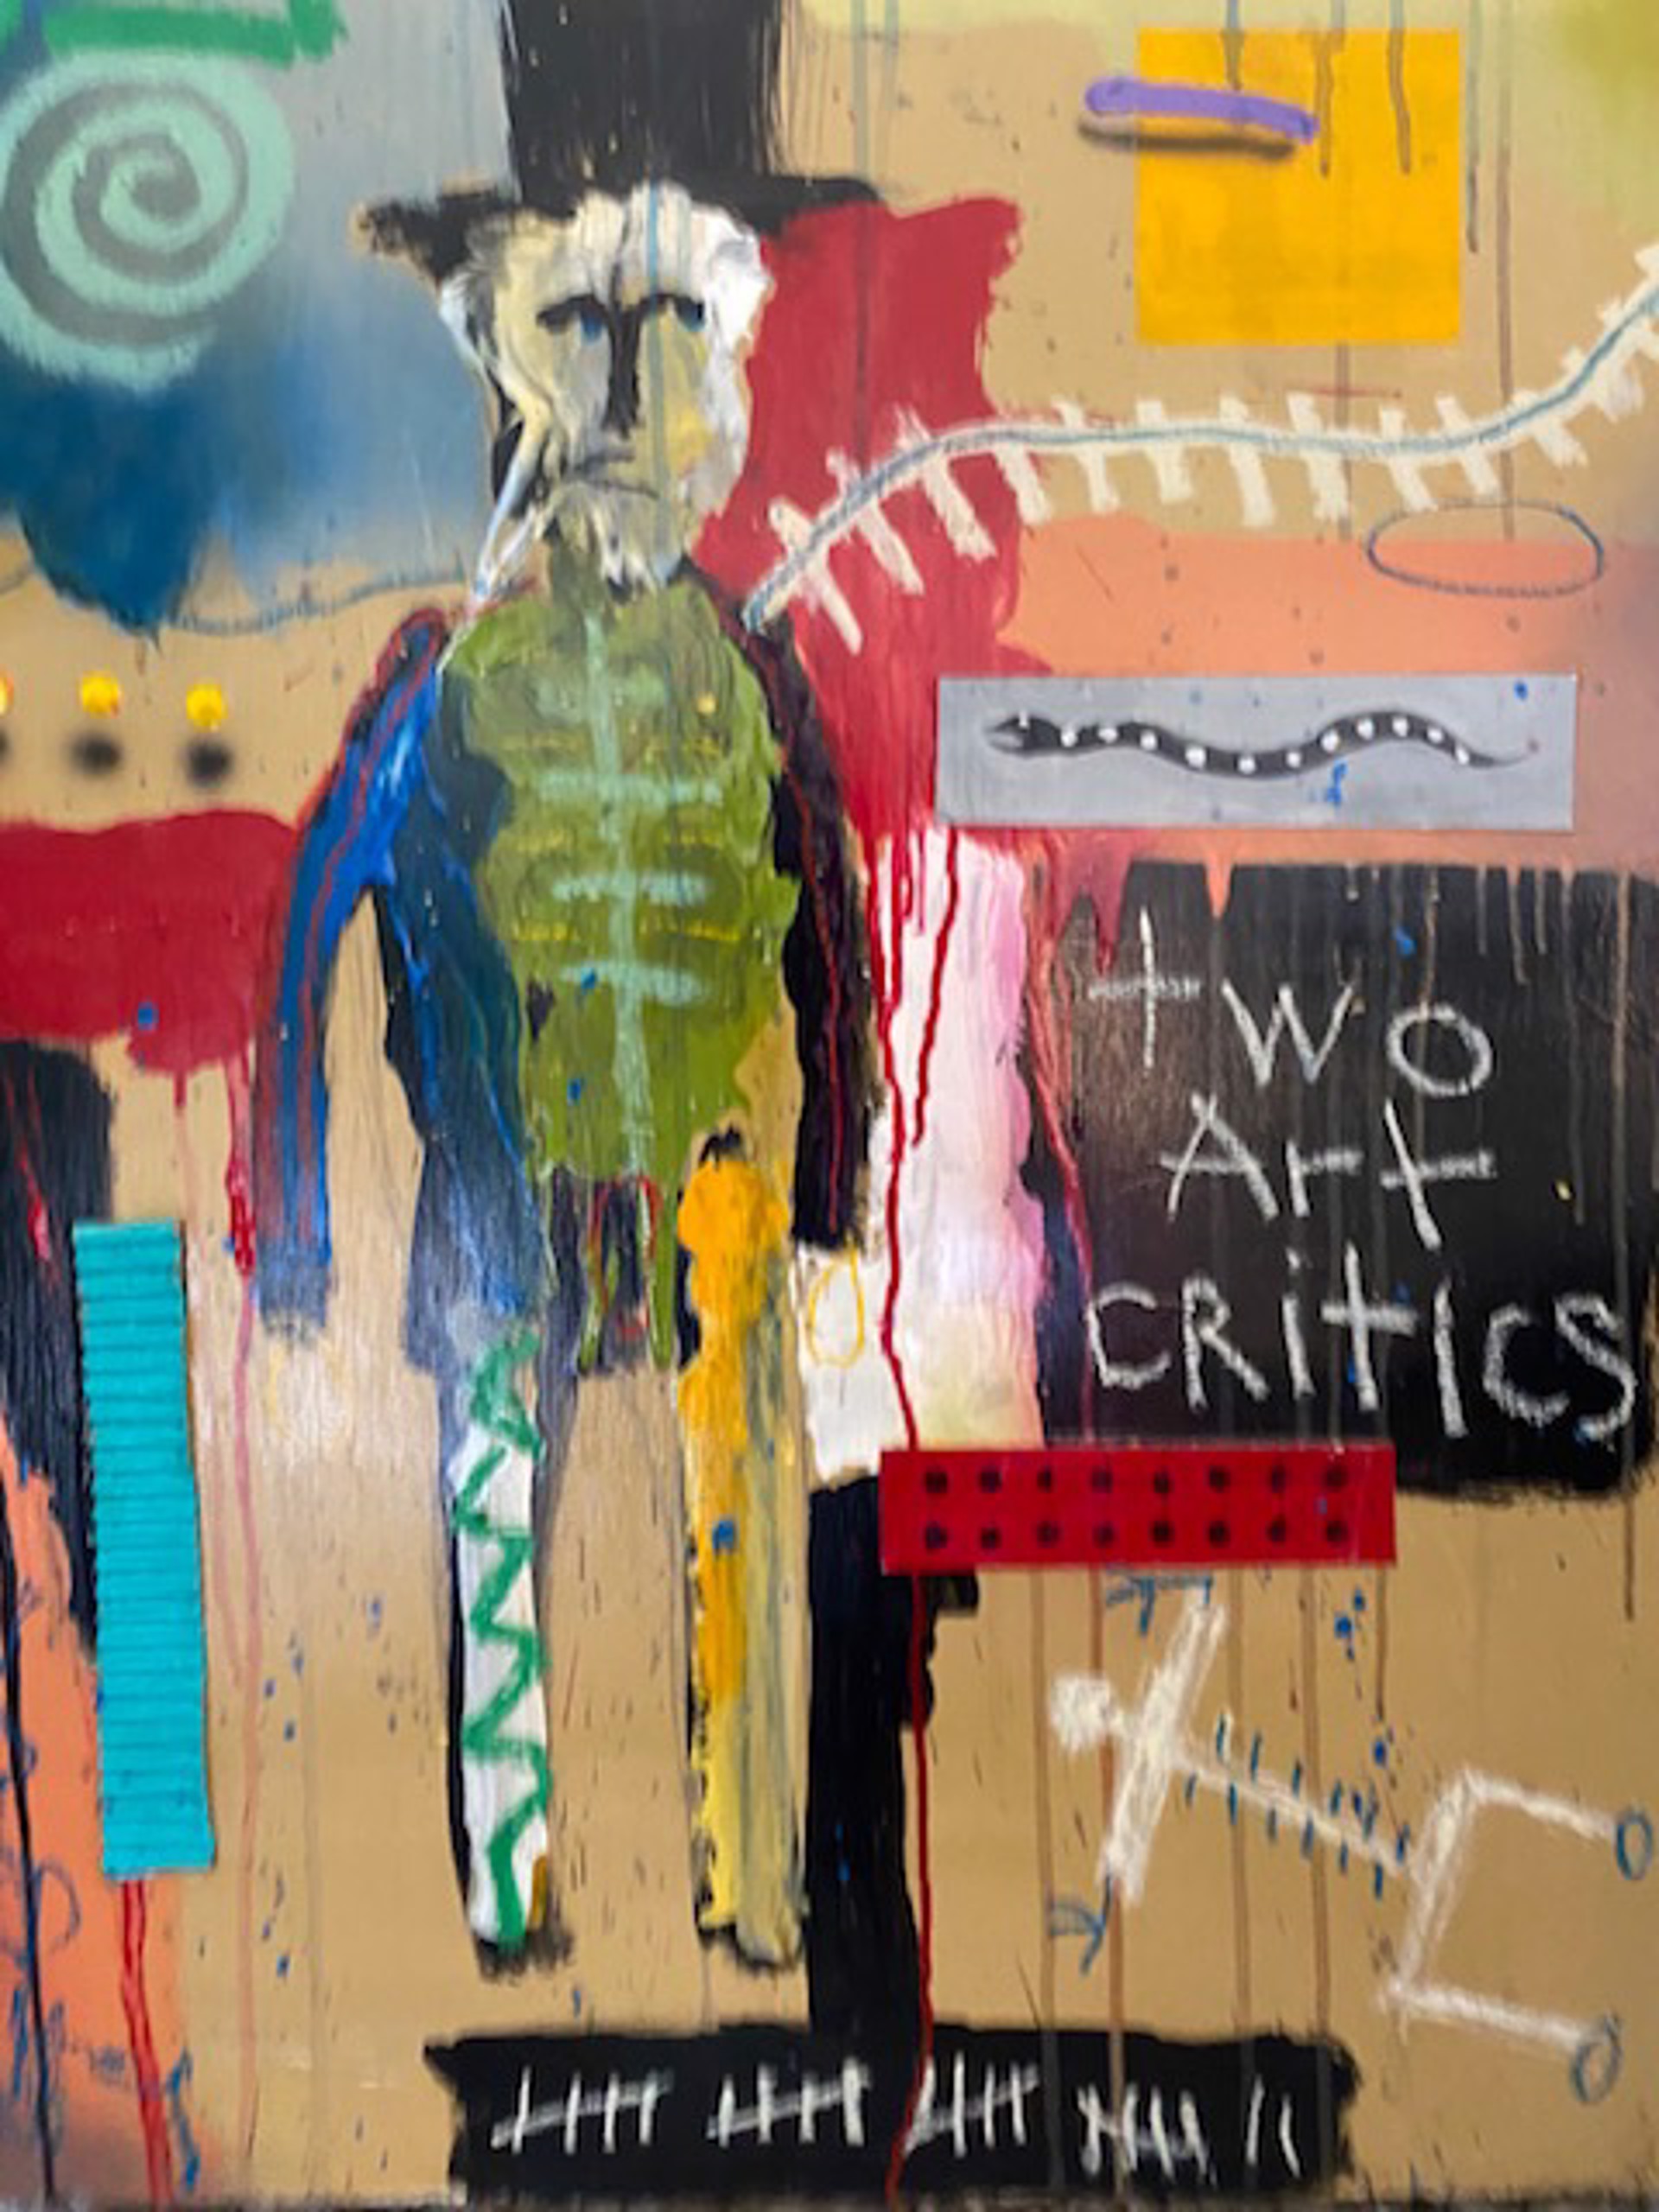 Two Art Critics by Michael Snodgrass